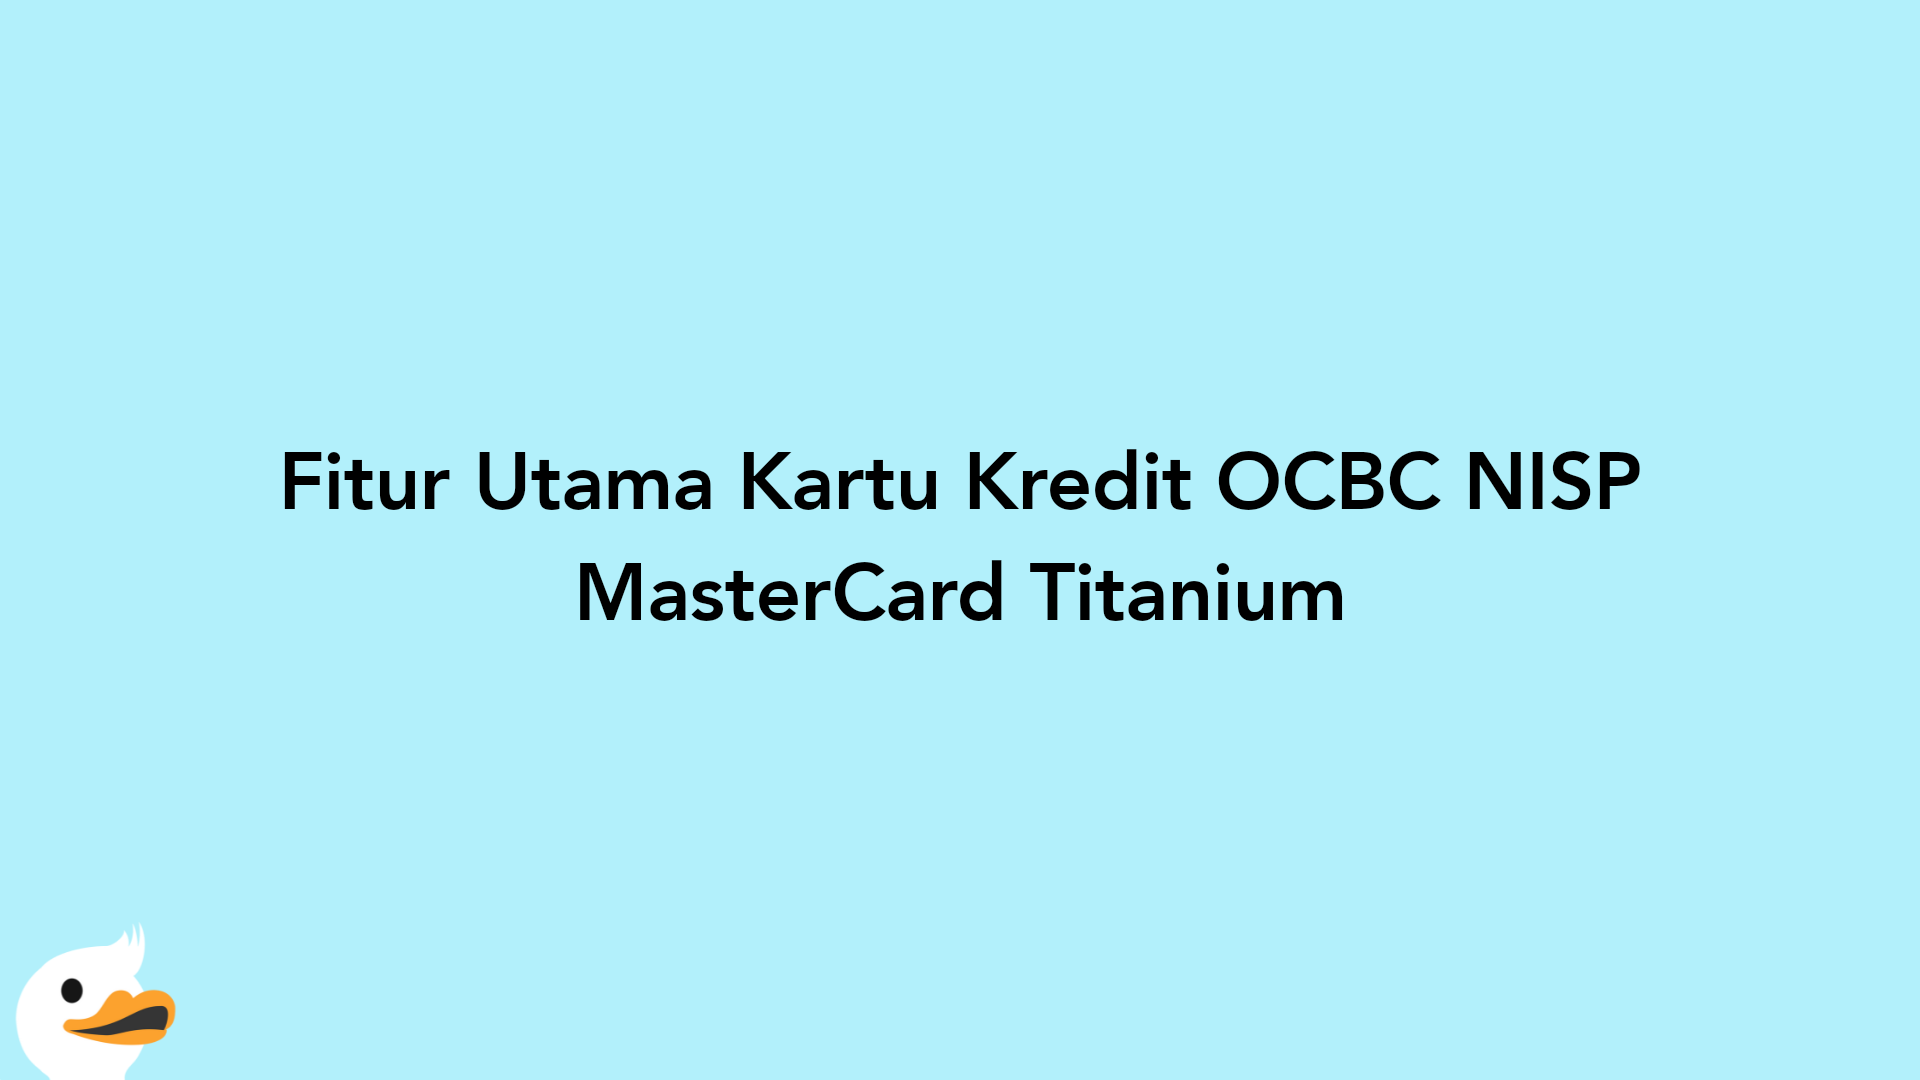 Fitur Utama Kartu Kredit OCBC NISP MasterCard Titanium